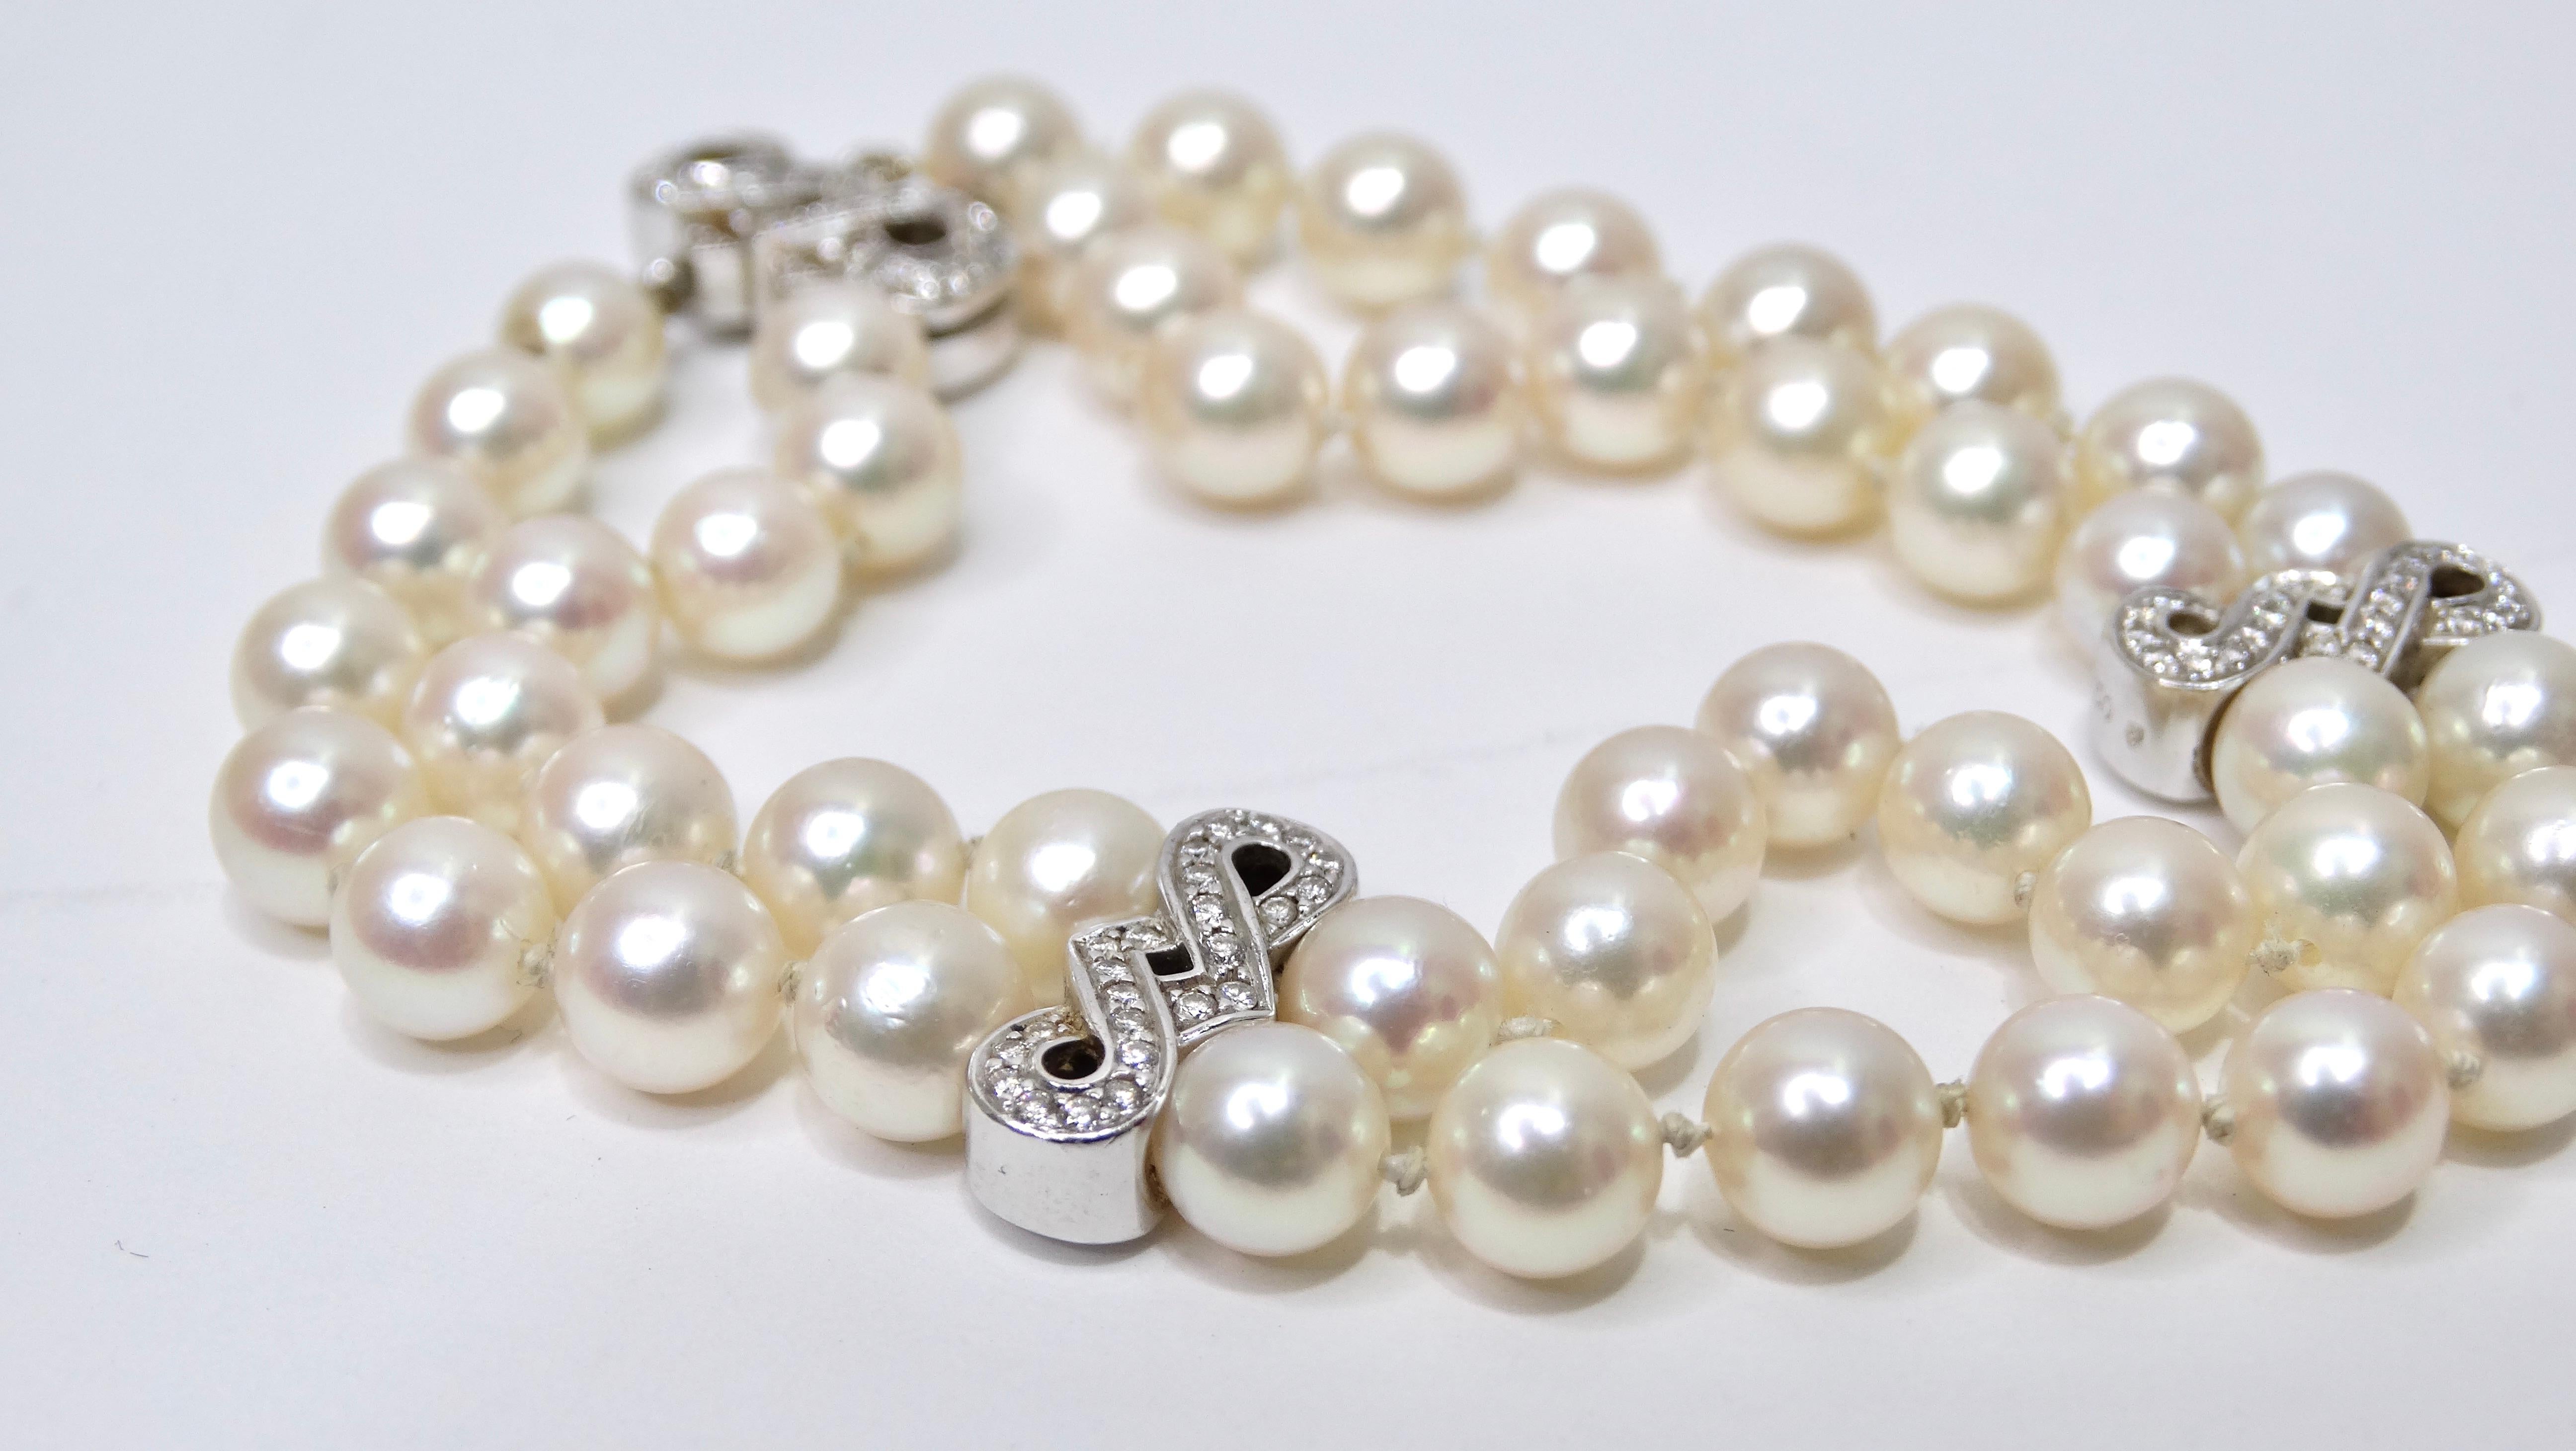 Ein wunderschönes, elegantes, authentisches Süßwasserperlenarmband, das jeder in seiner Schmucksammlung verwenden kann. Perlen sind dekadent und gehören zu den begehrtesten MATERIALEN für Schmuck. Dieses Armband besteht aus 18 Karat Weißgold mit